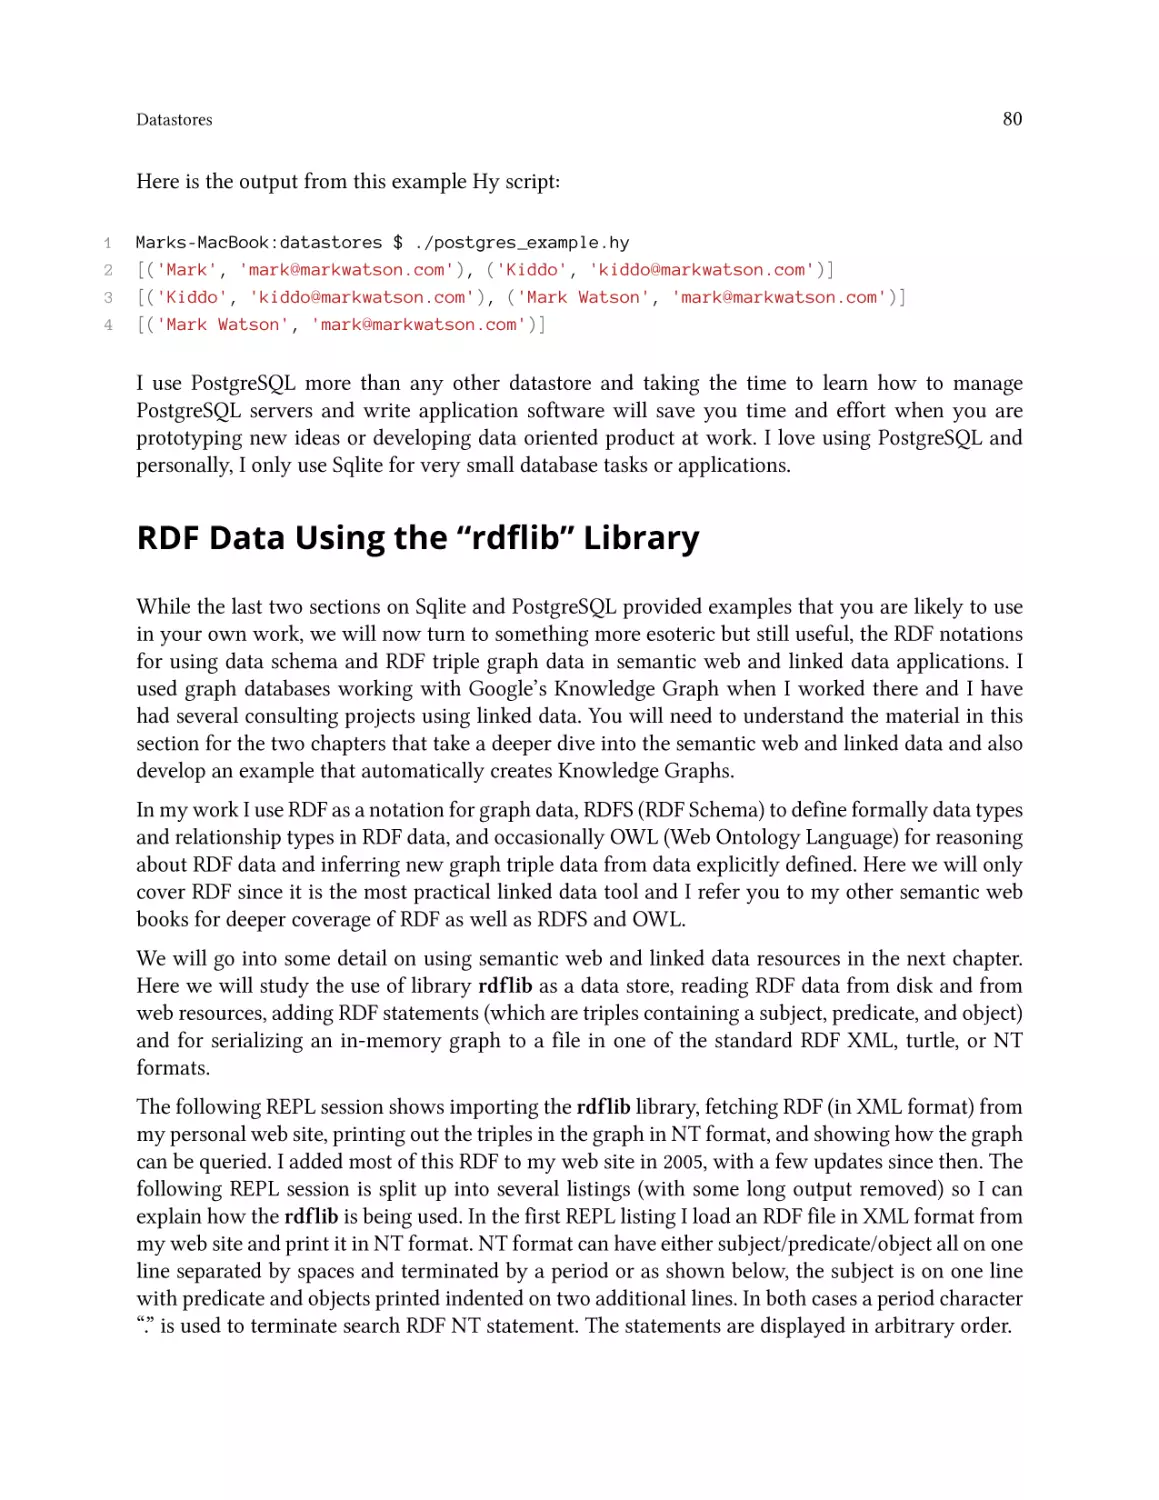 RDF Data Using the ``rdflib'' Library